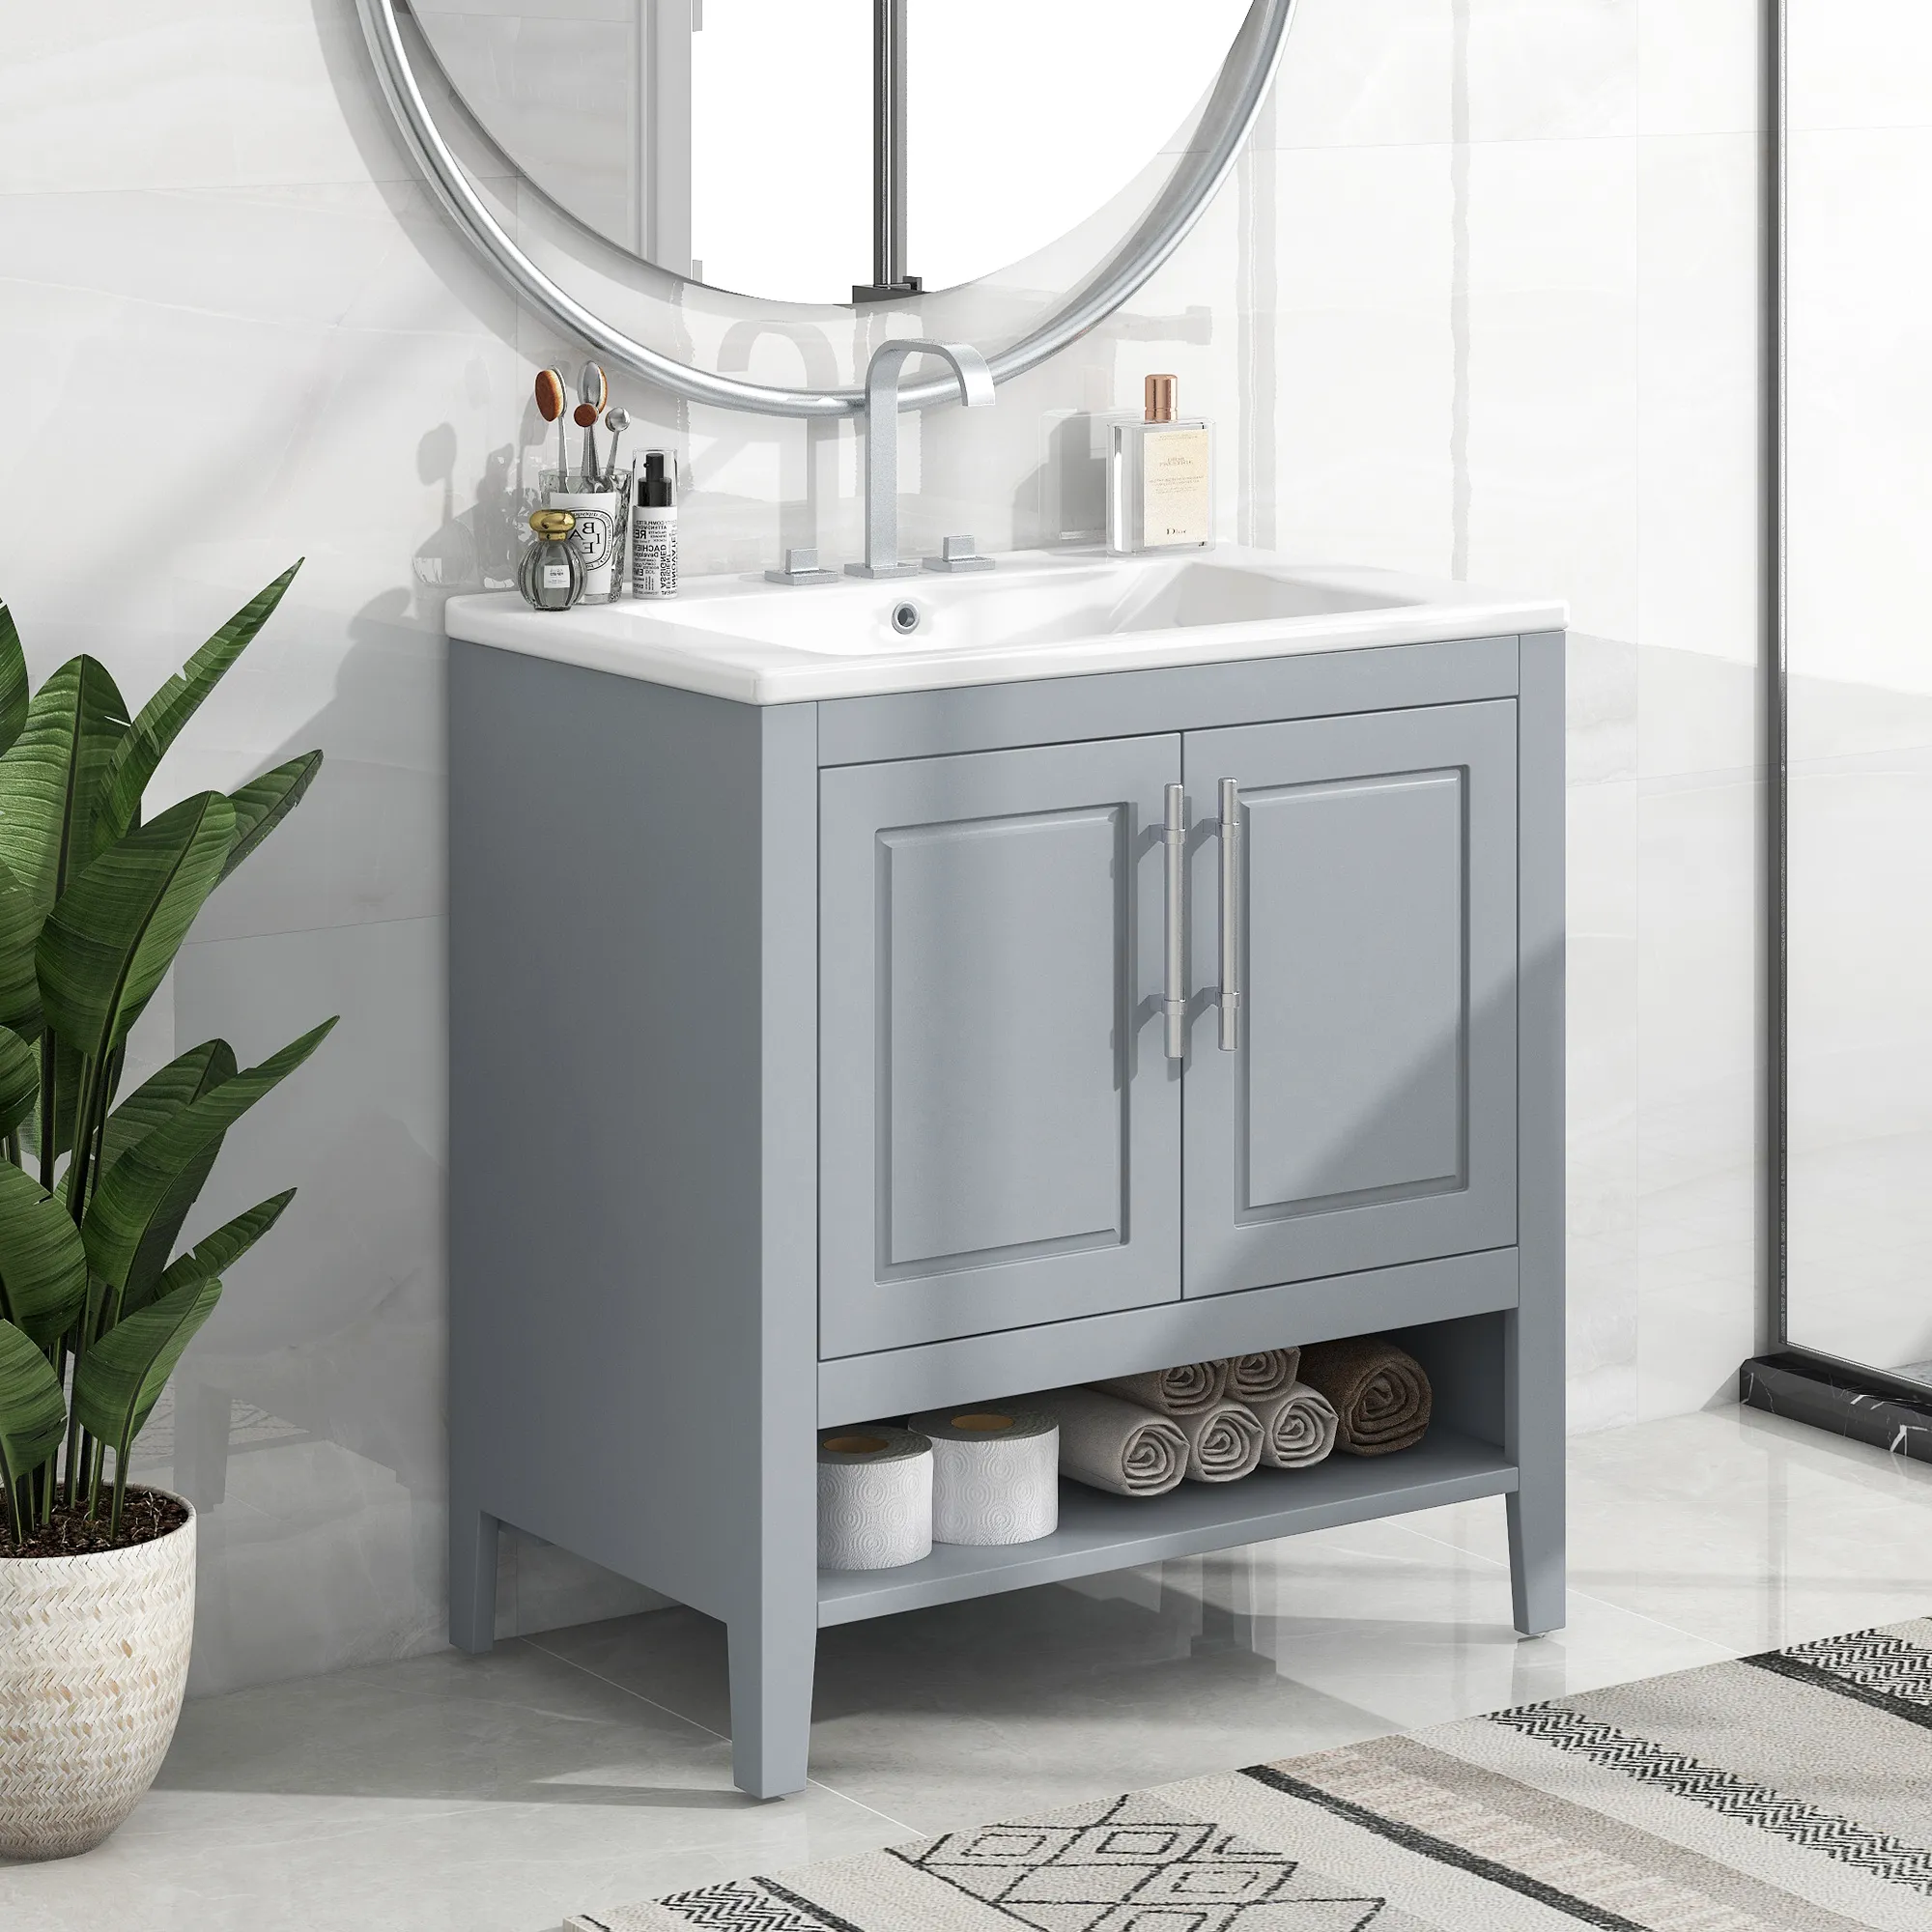 Merax Freestanding 30" Bathroom Furniture Vanity with Sink